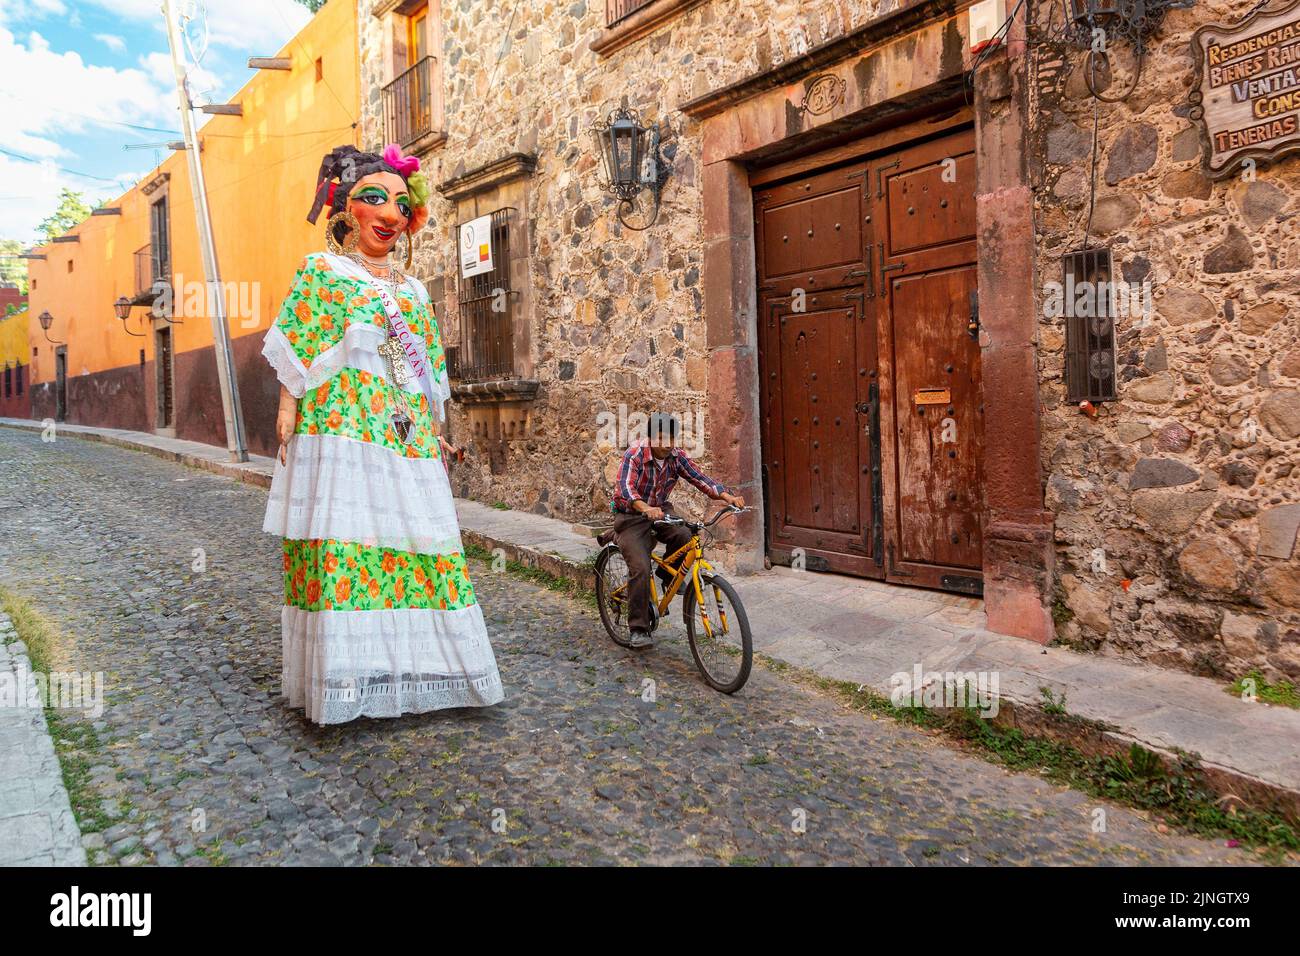 Un ciclista pasa por un mojiganga, o marioneta gigante hecha del papier mâché mientras camina por el centro histórico de la ciudad de San Miguel de Allende, México. Foto de stock